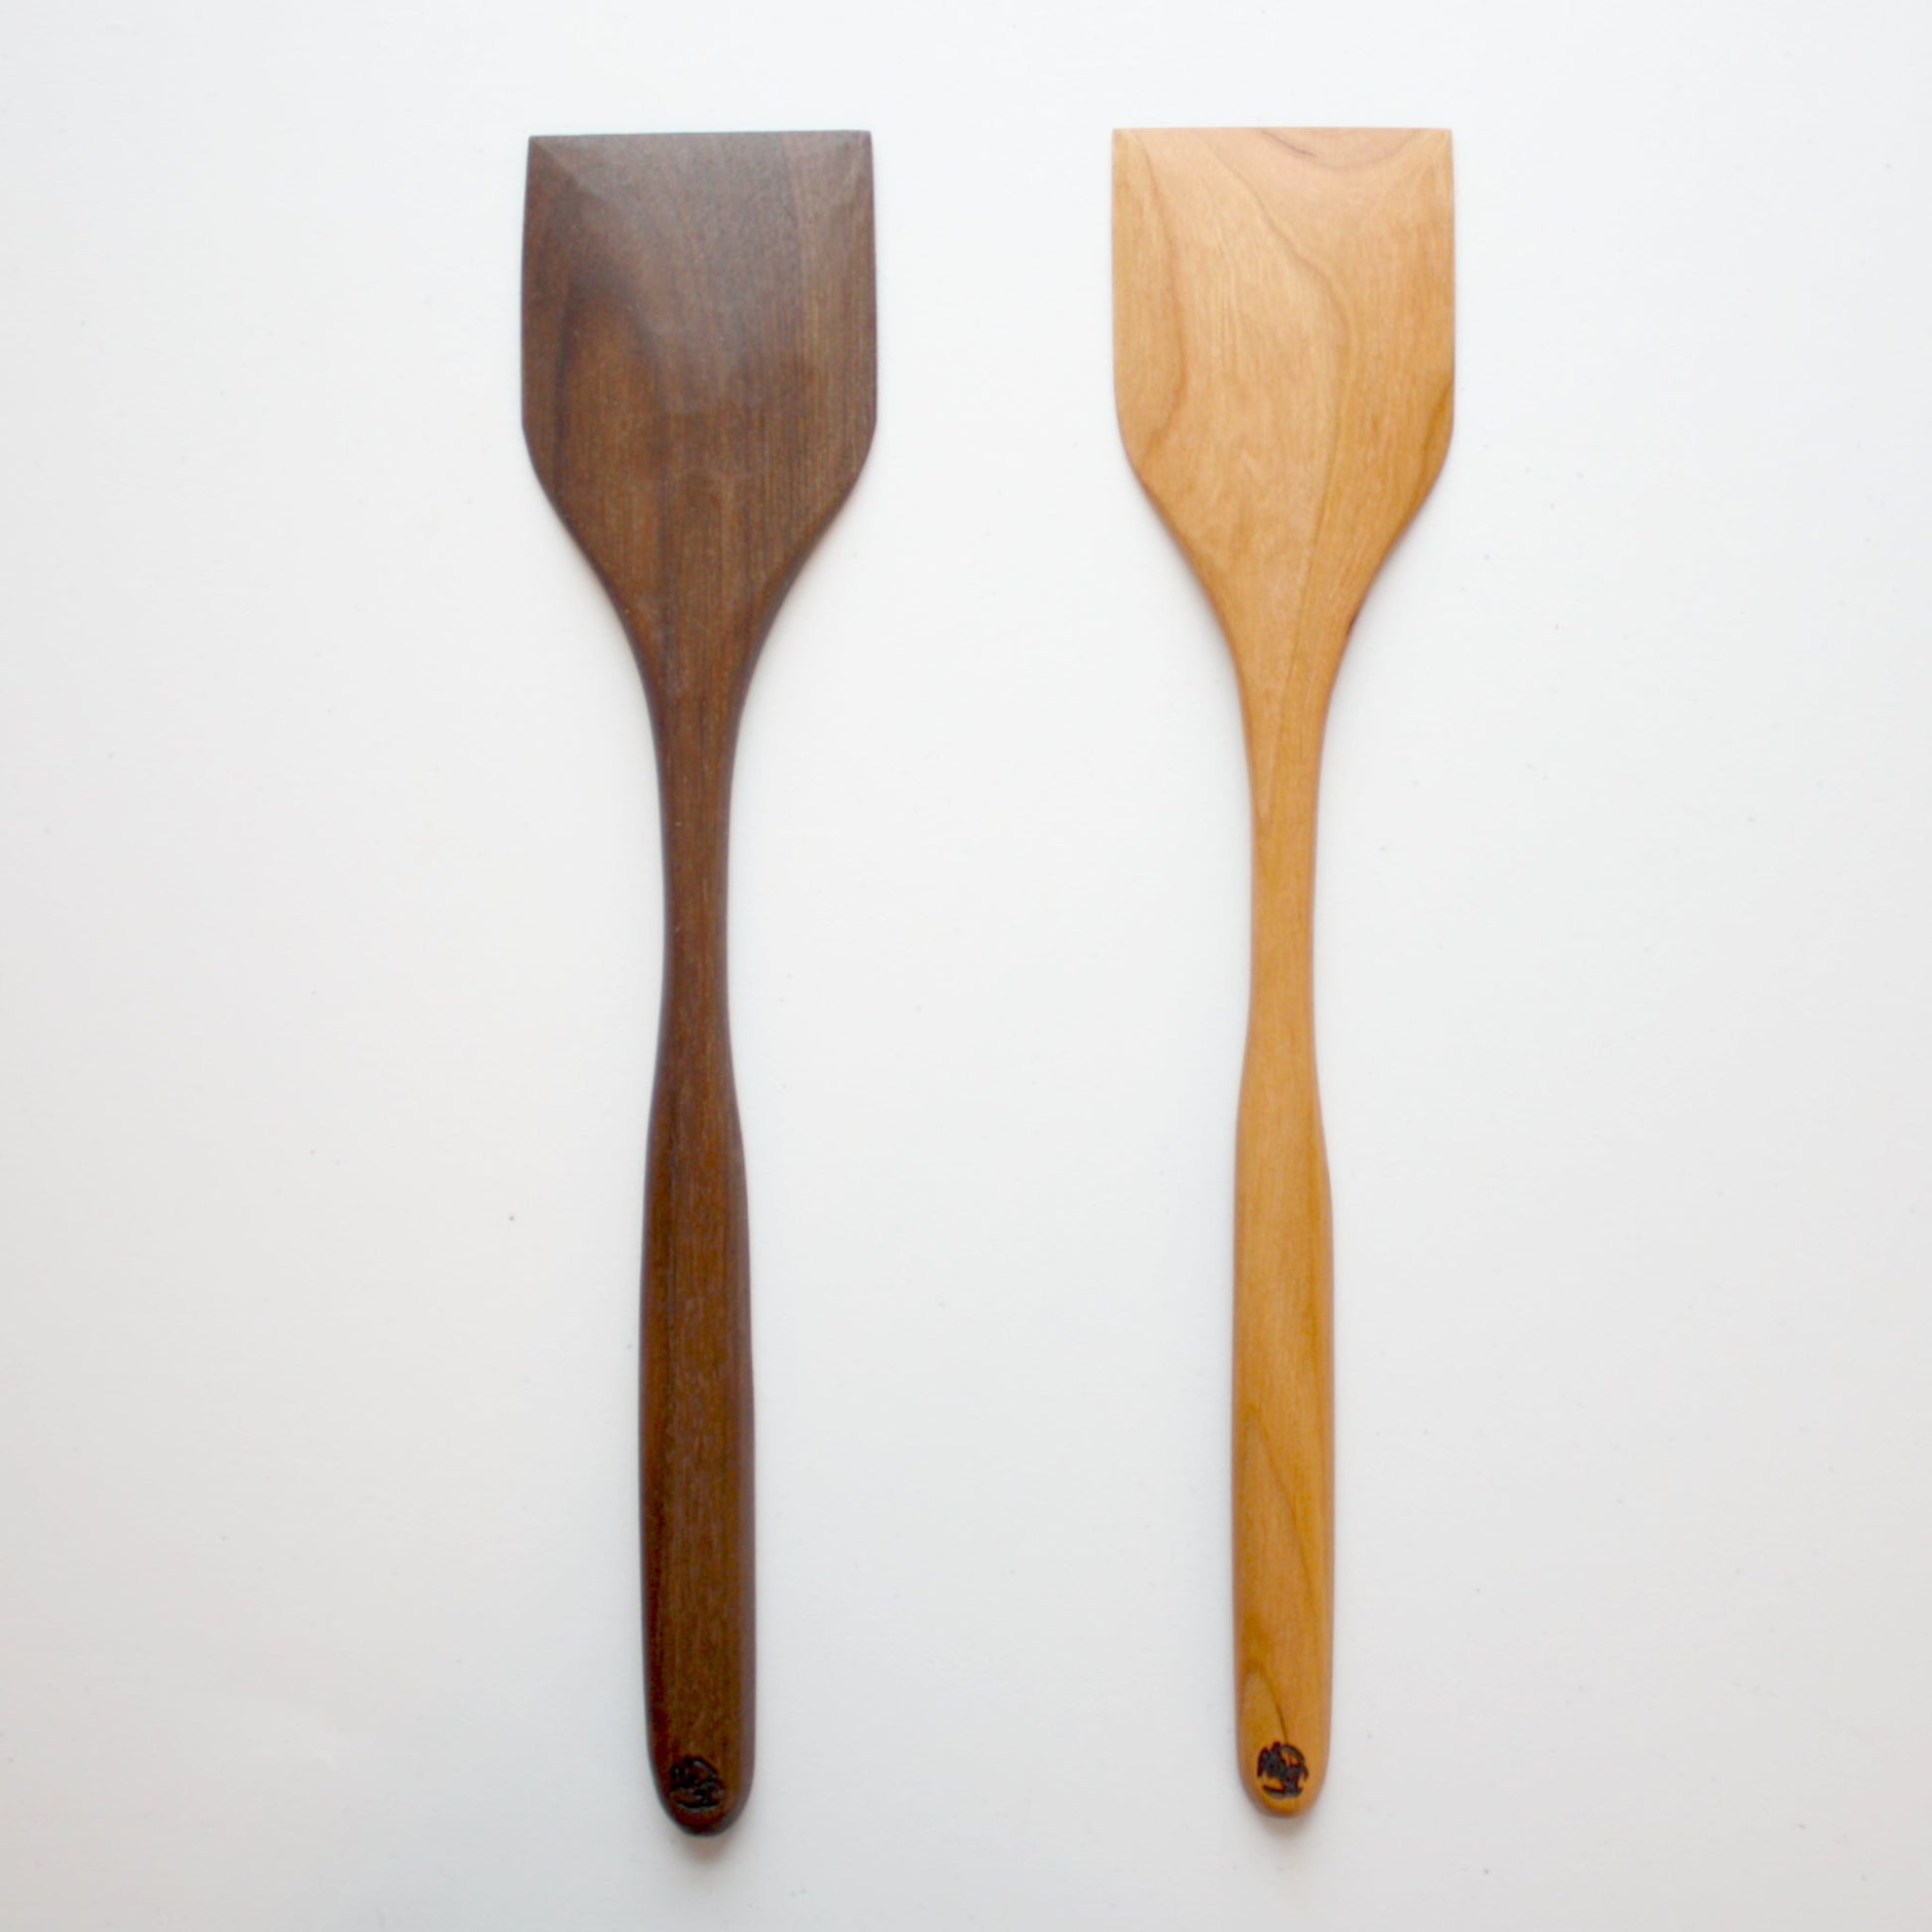 https://localwe.com/cdn/shop/products/woodenspatula2.jpg?v=1674046317&width=1946